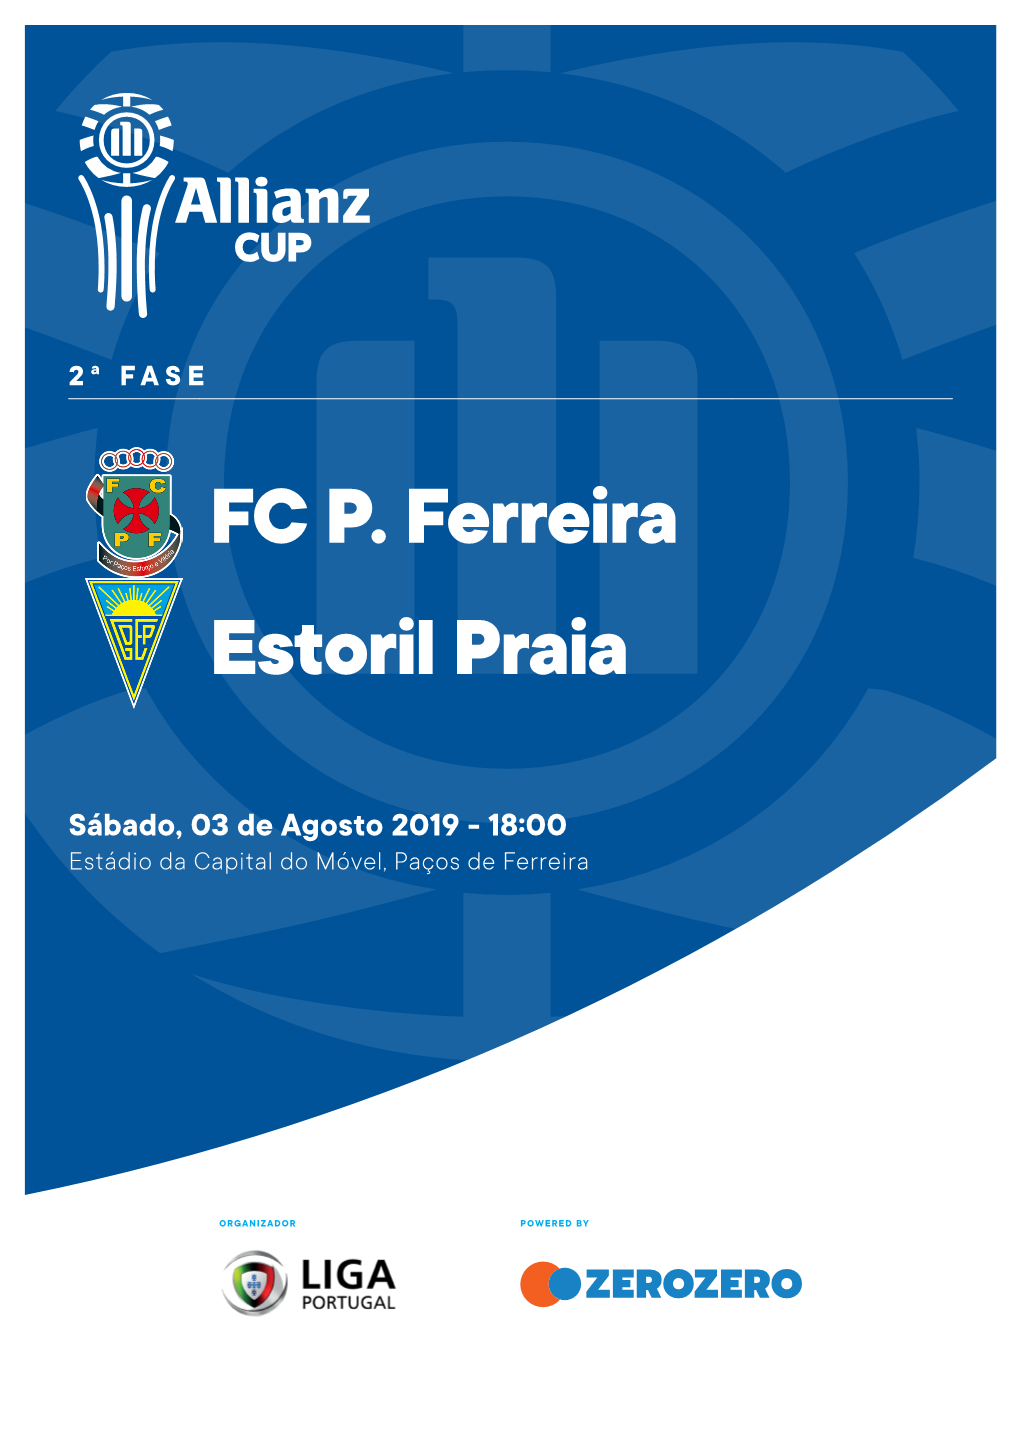 FC P. Ferreira Estoril Praia